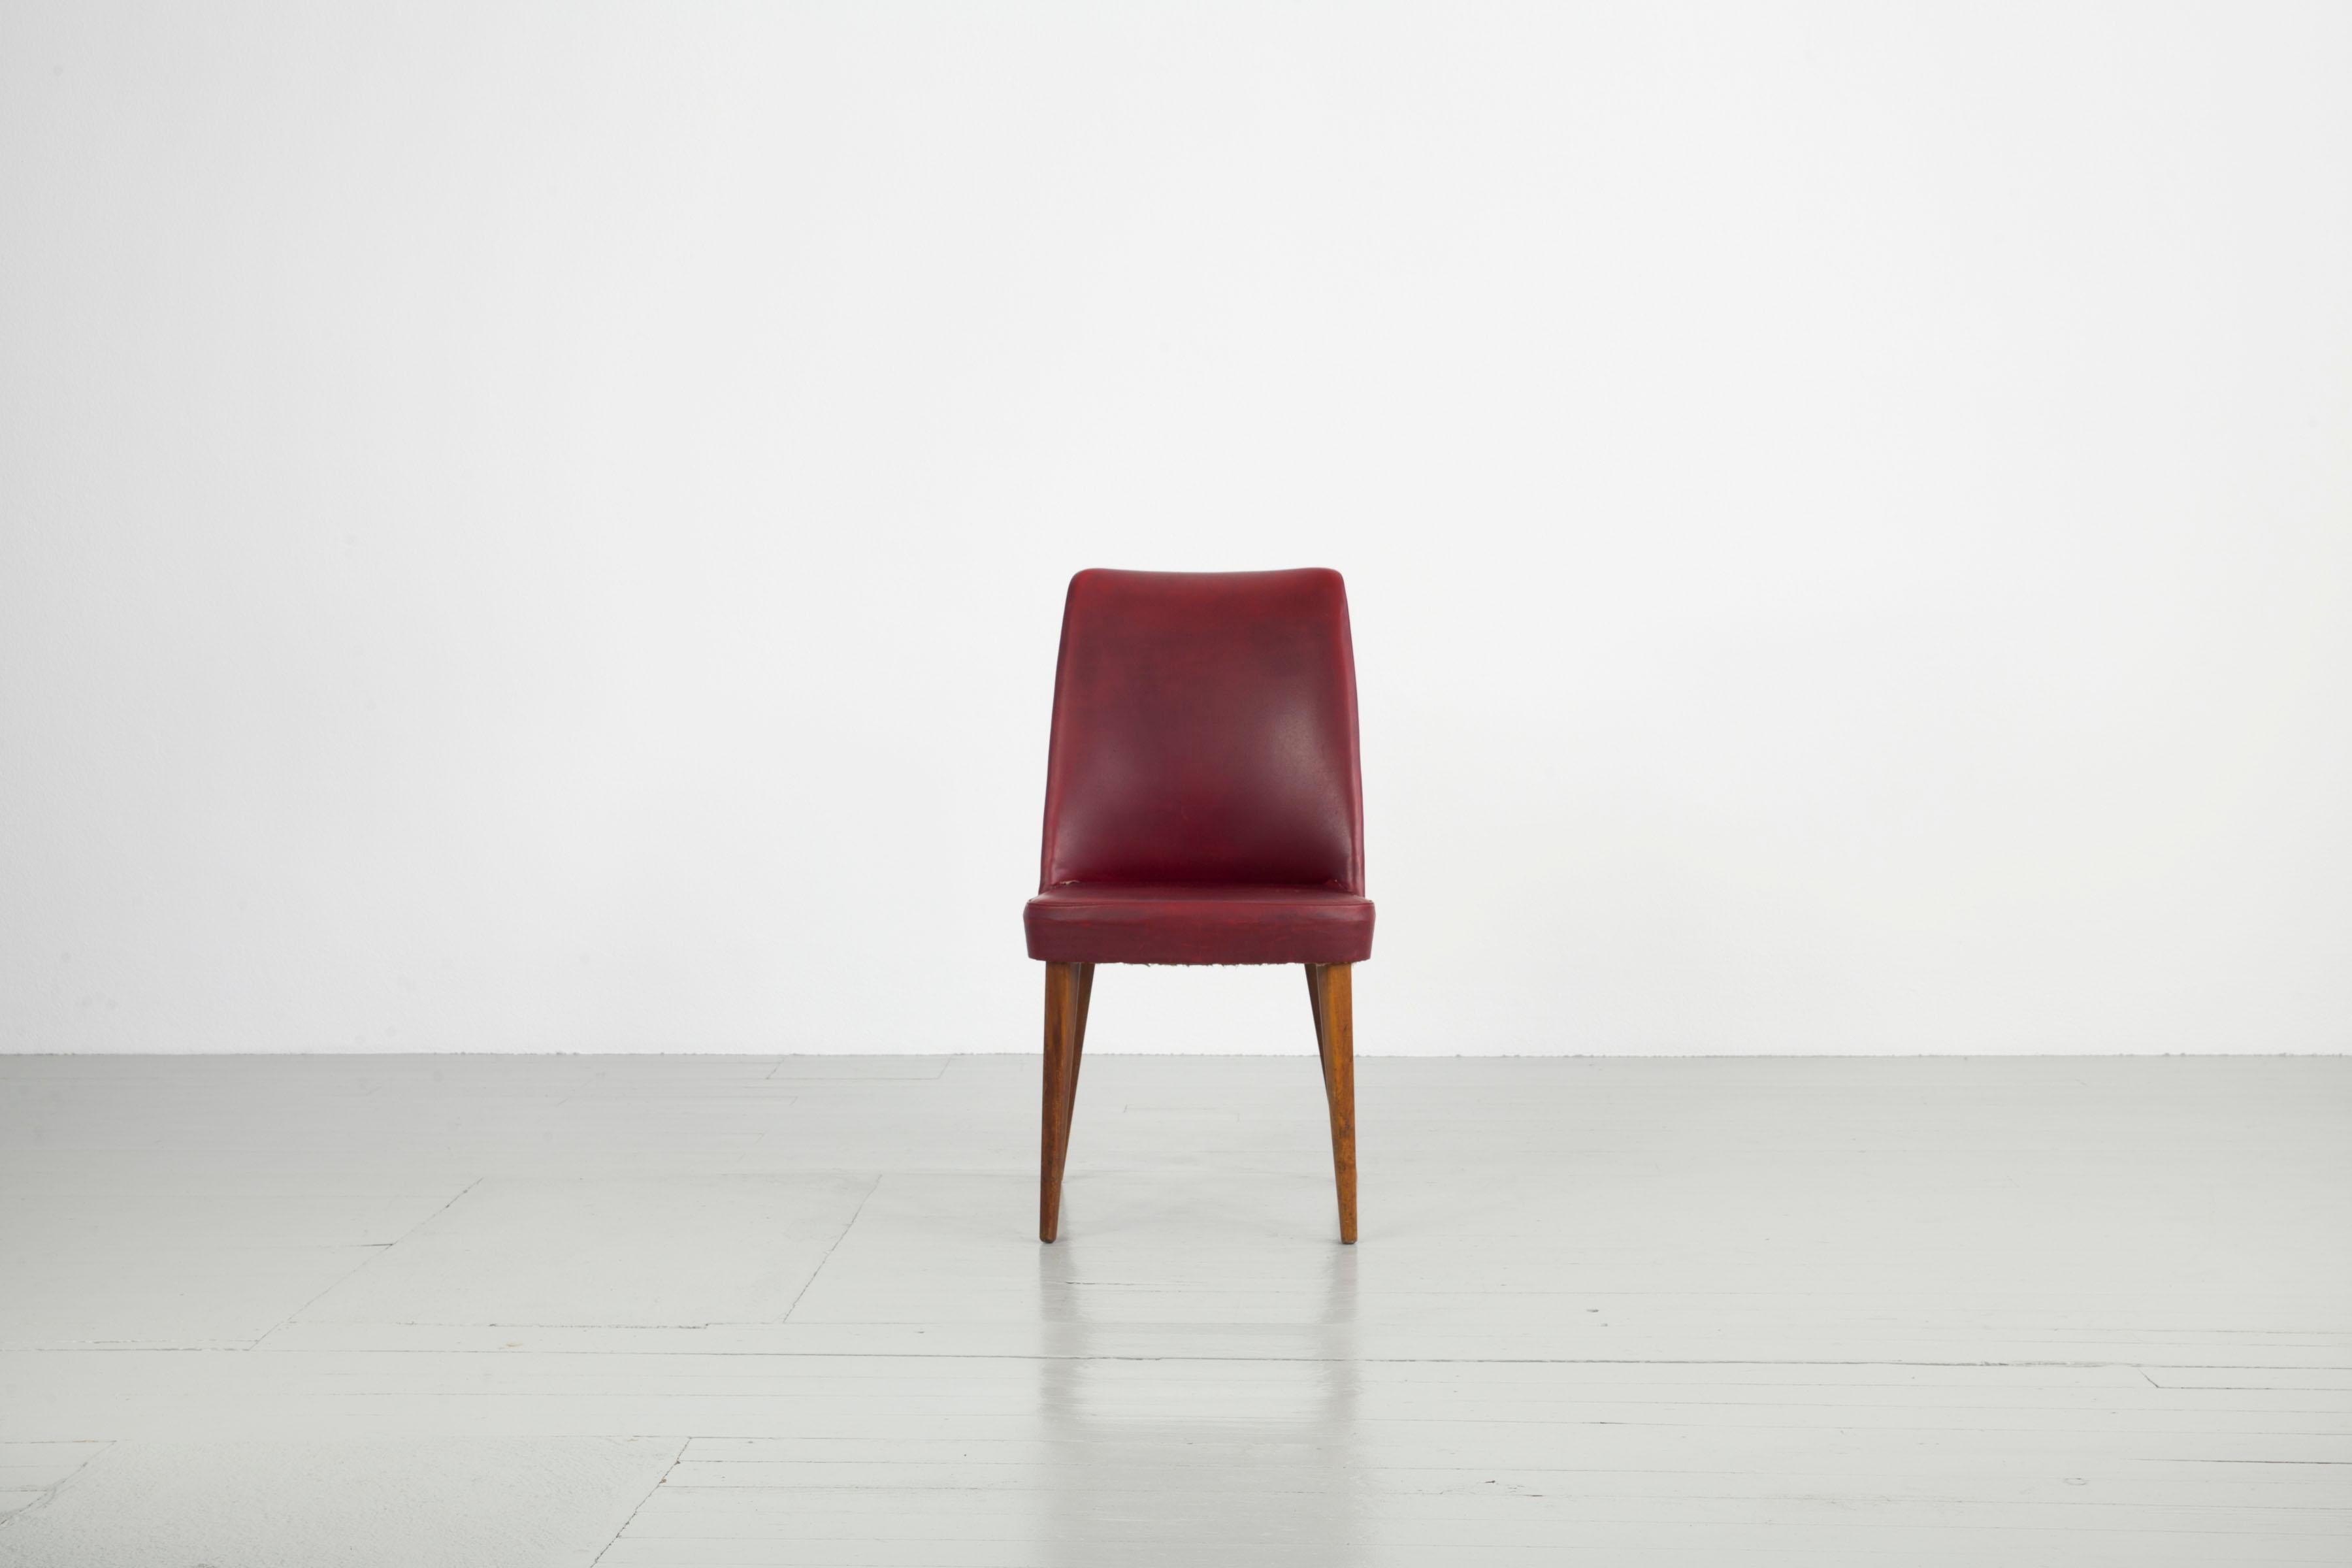 Dieses Set aus sechs Stühlen wurde in den 1950er Jahren von Anonima Castelli in Italien hergestellt. Die konisch geformten Stuhlbeine sind aus Eichenholz gefertigt, die Sitzfläche ist mit rotem Kunstleder bezogen. Die Stühle müssen neu gepolstert